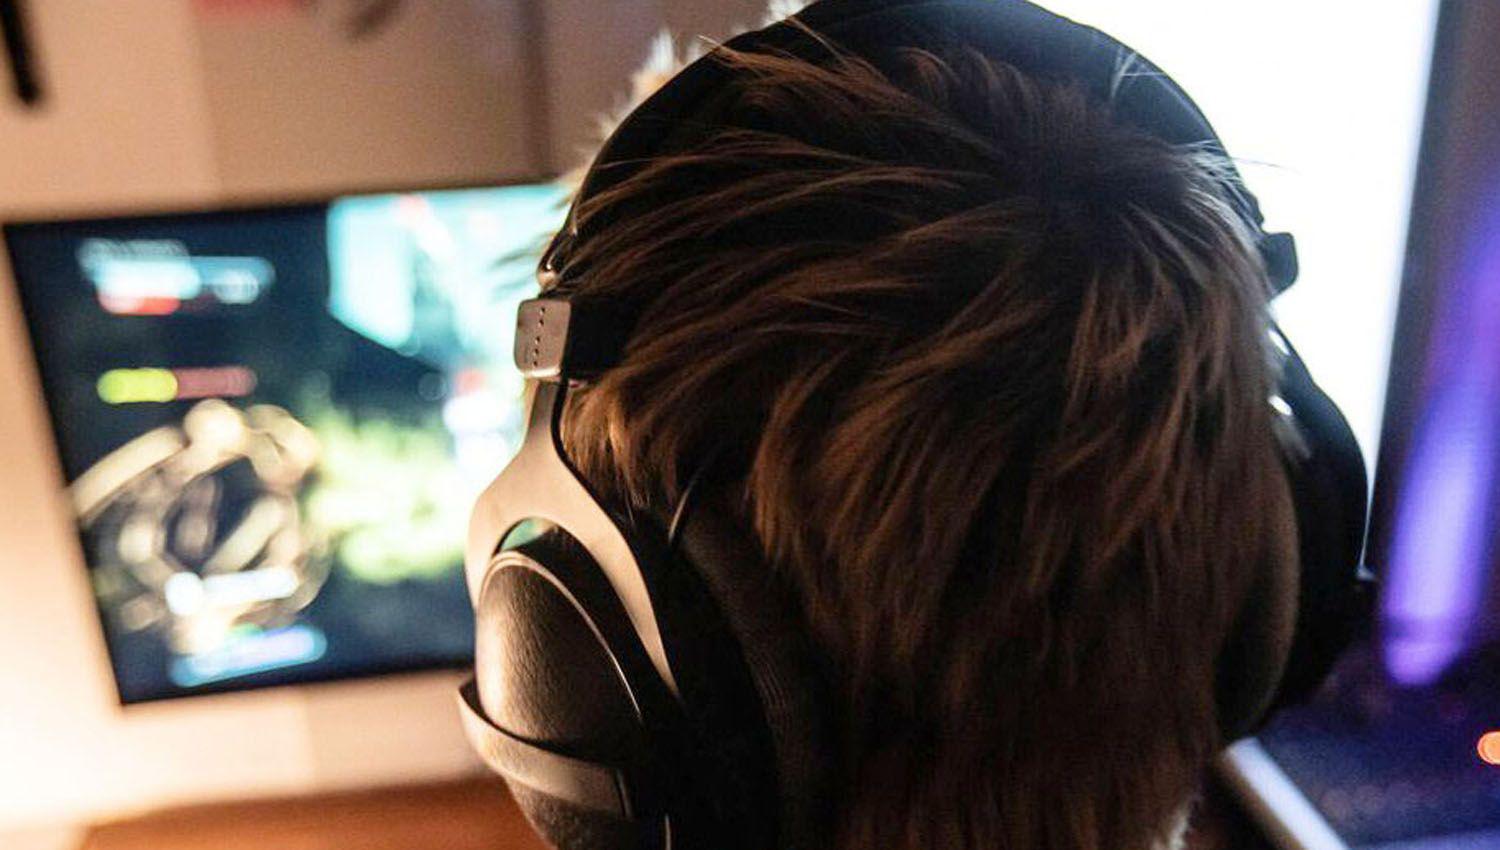 La adiccioacuten a los videojuegos fue clasificada como una enfermedad mental por la OMS